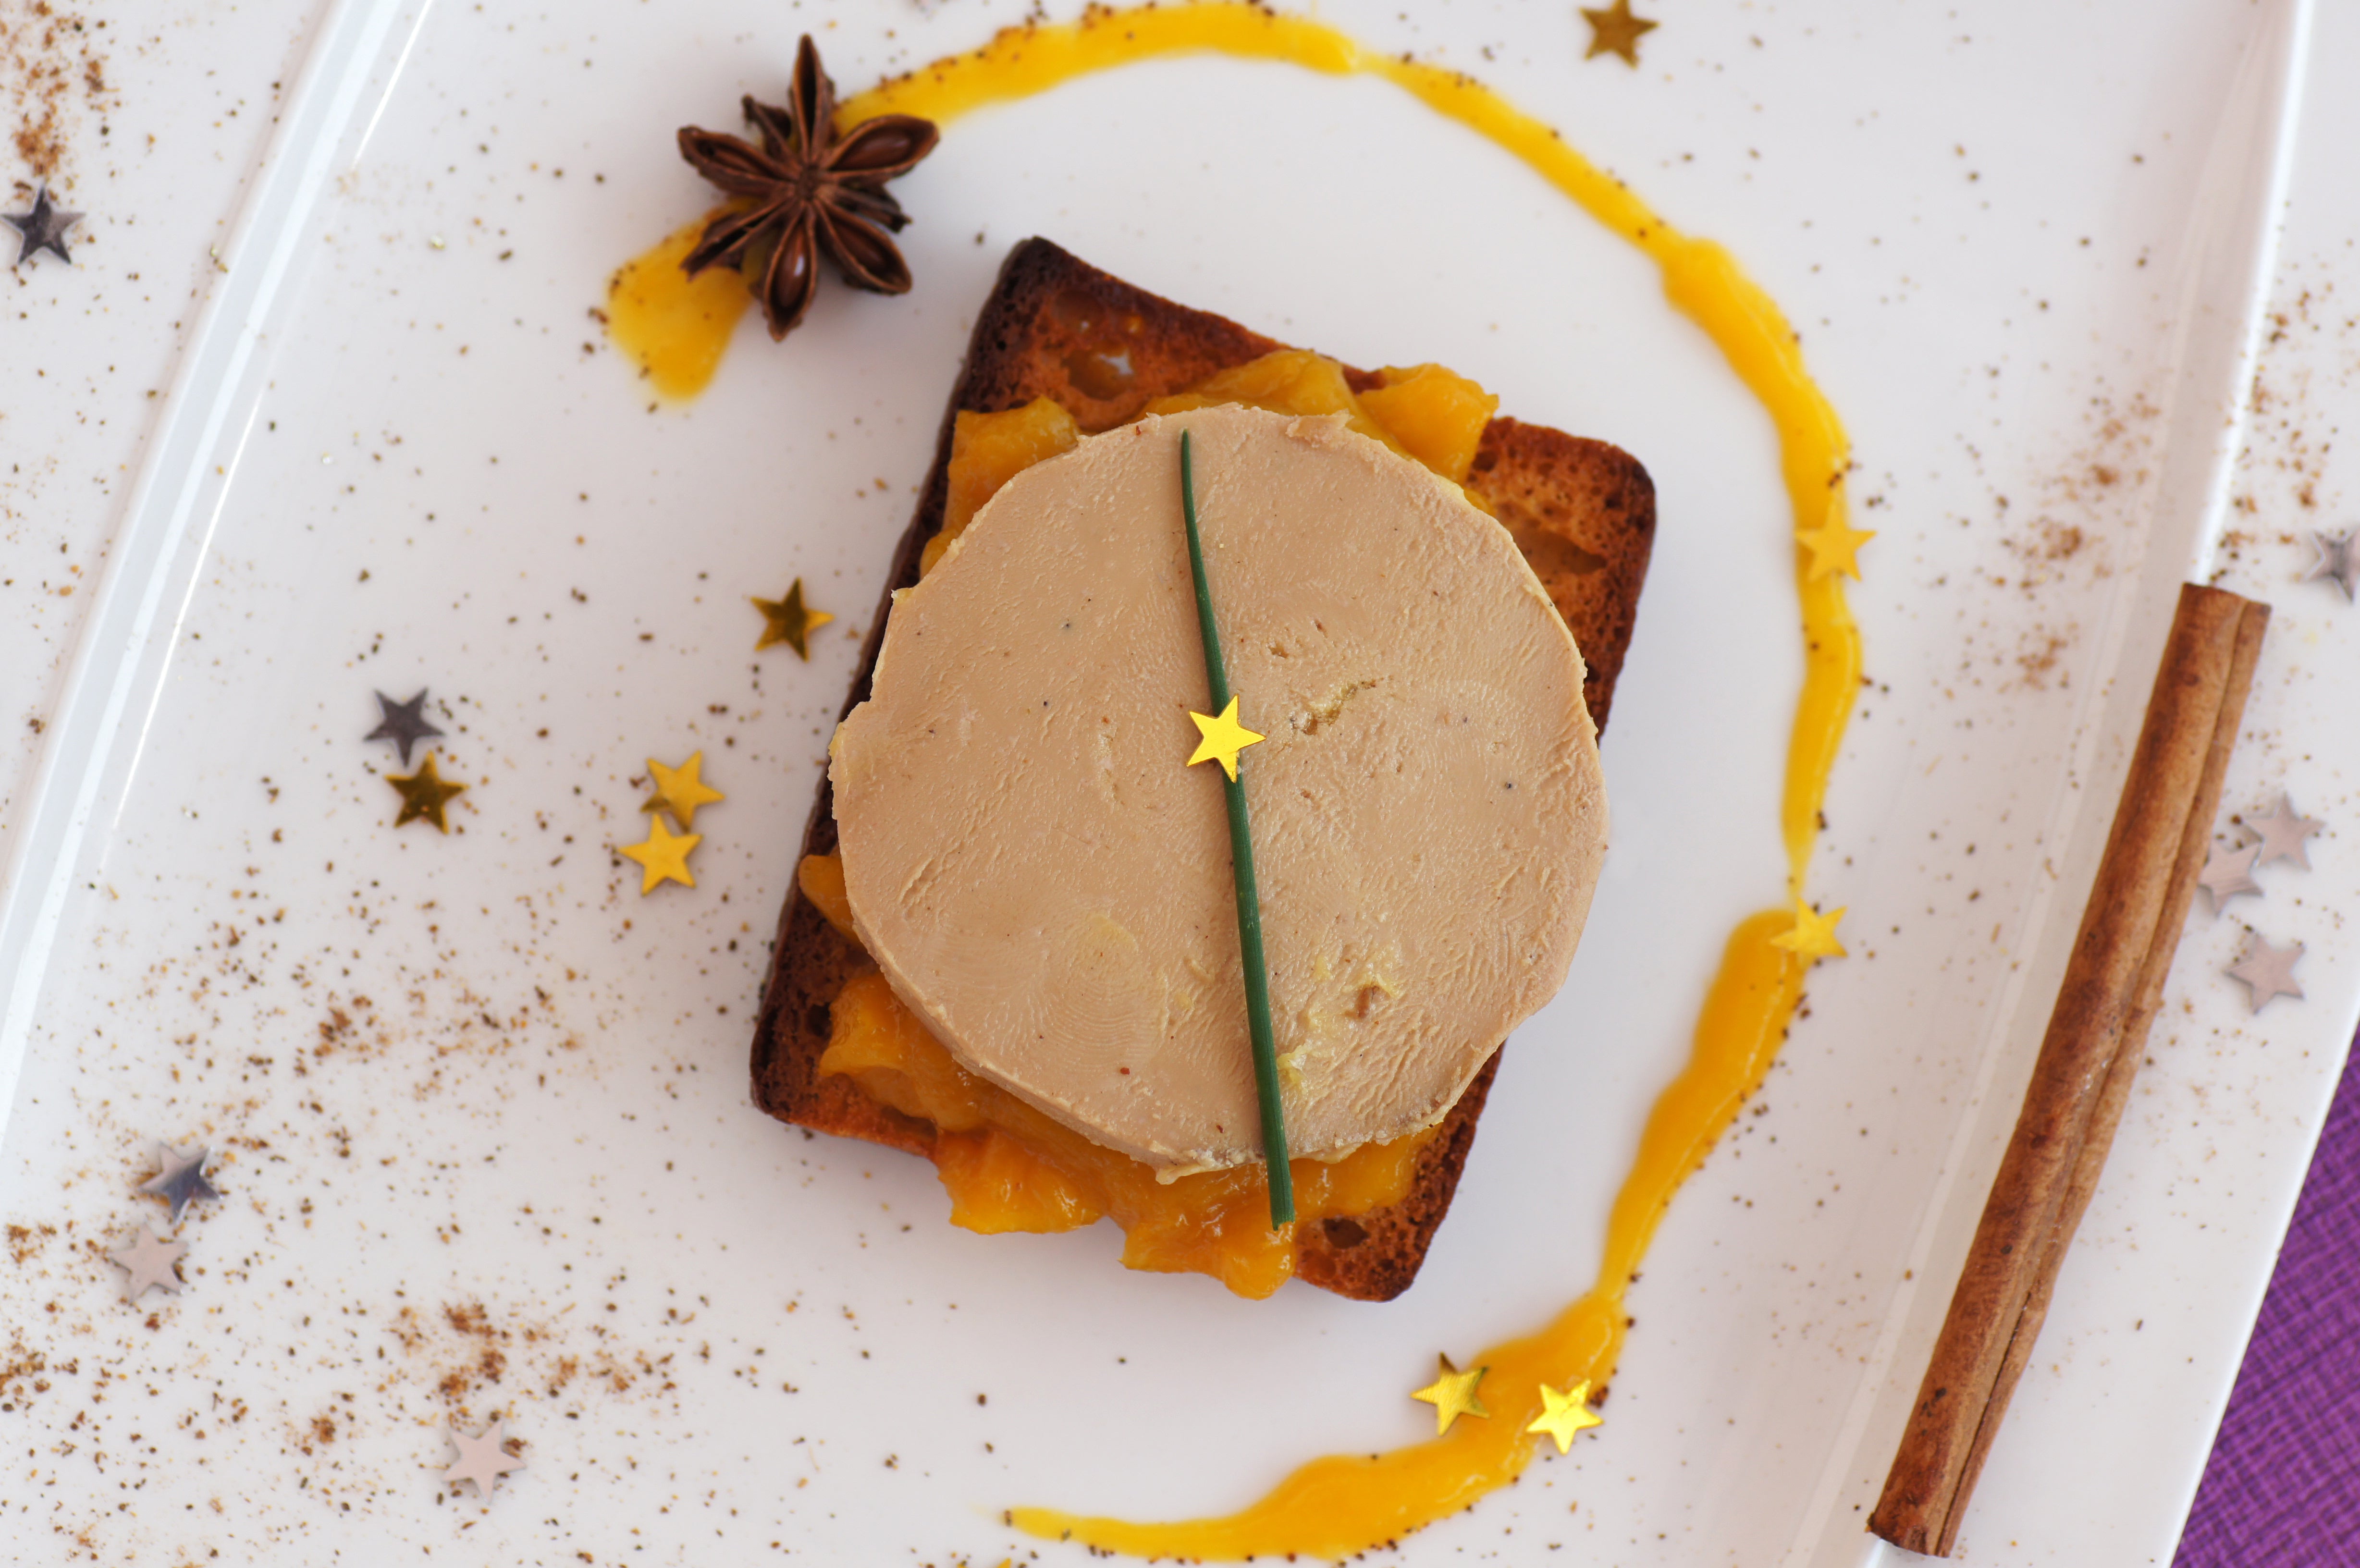 Prix du foie gras et raisons de choisir la meilleure qualité